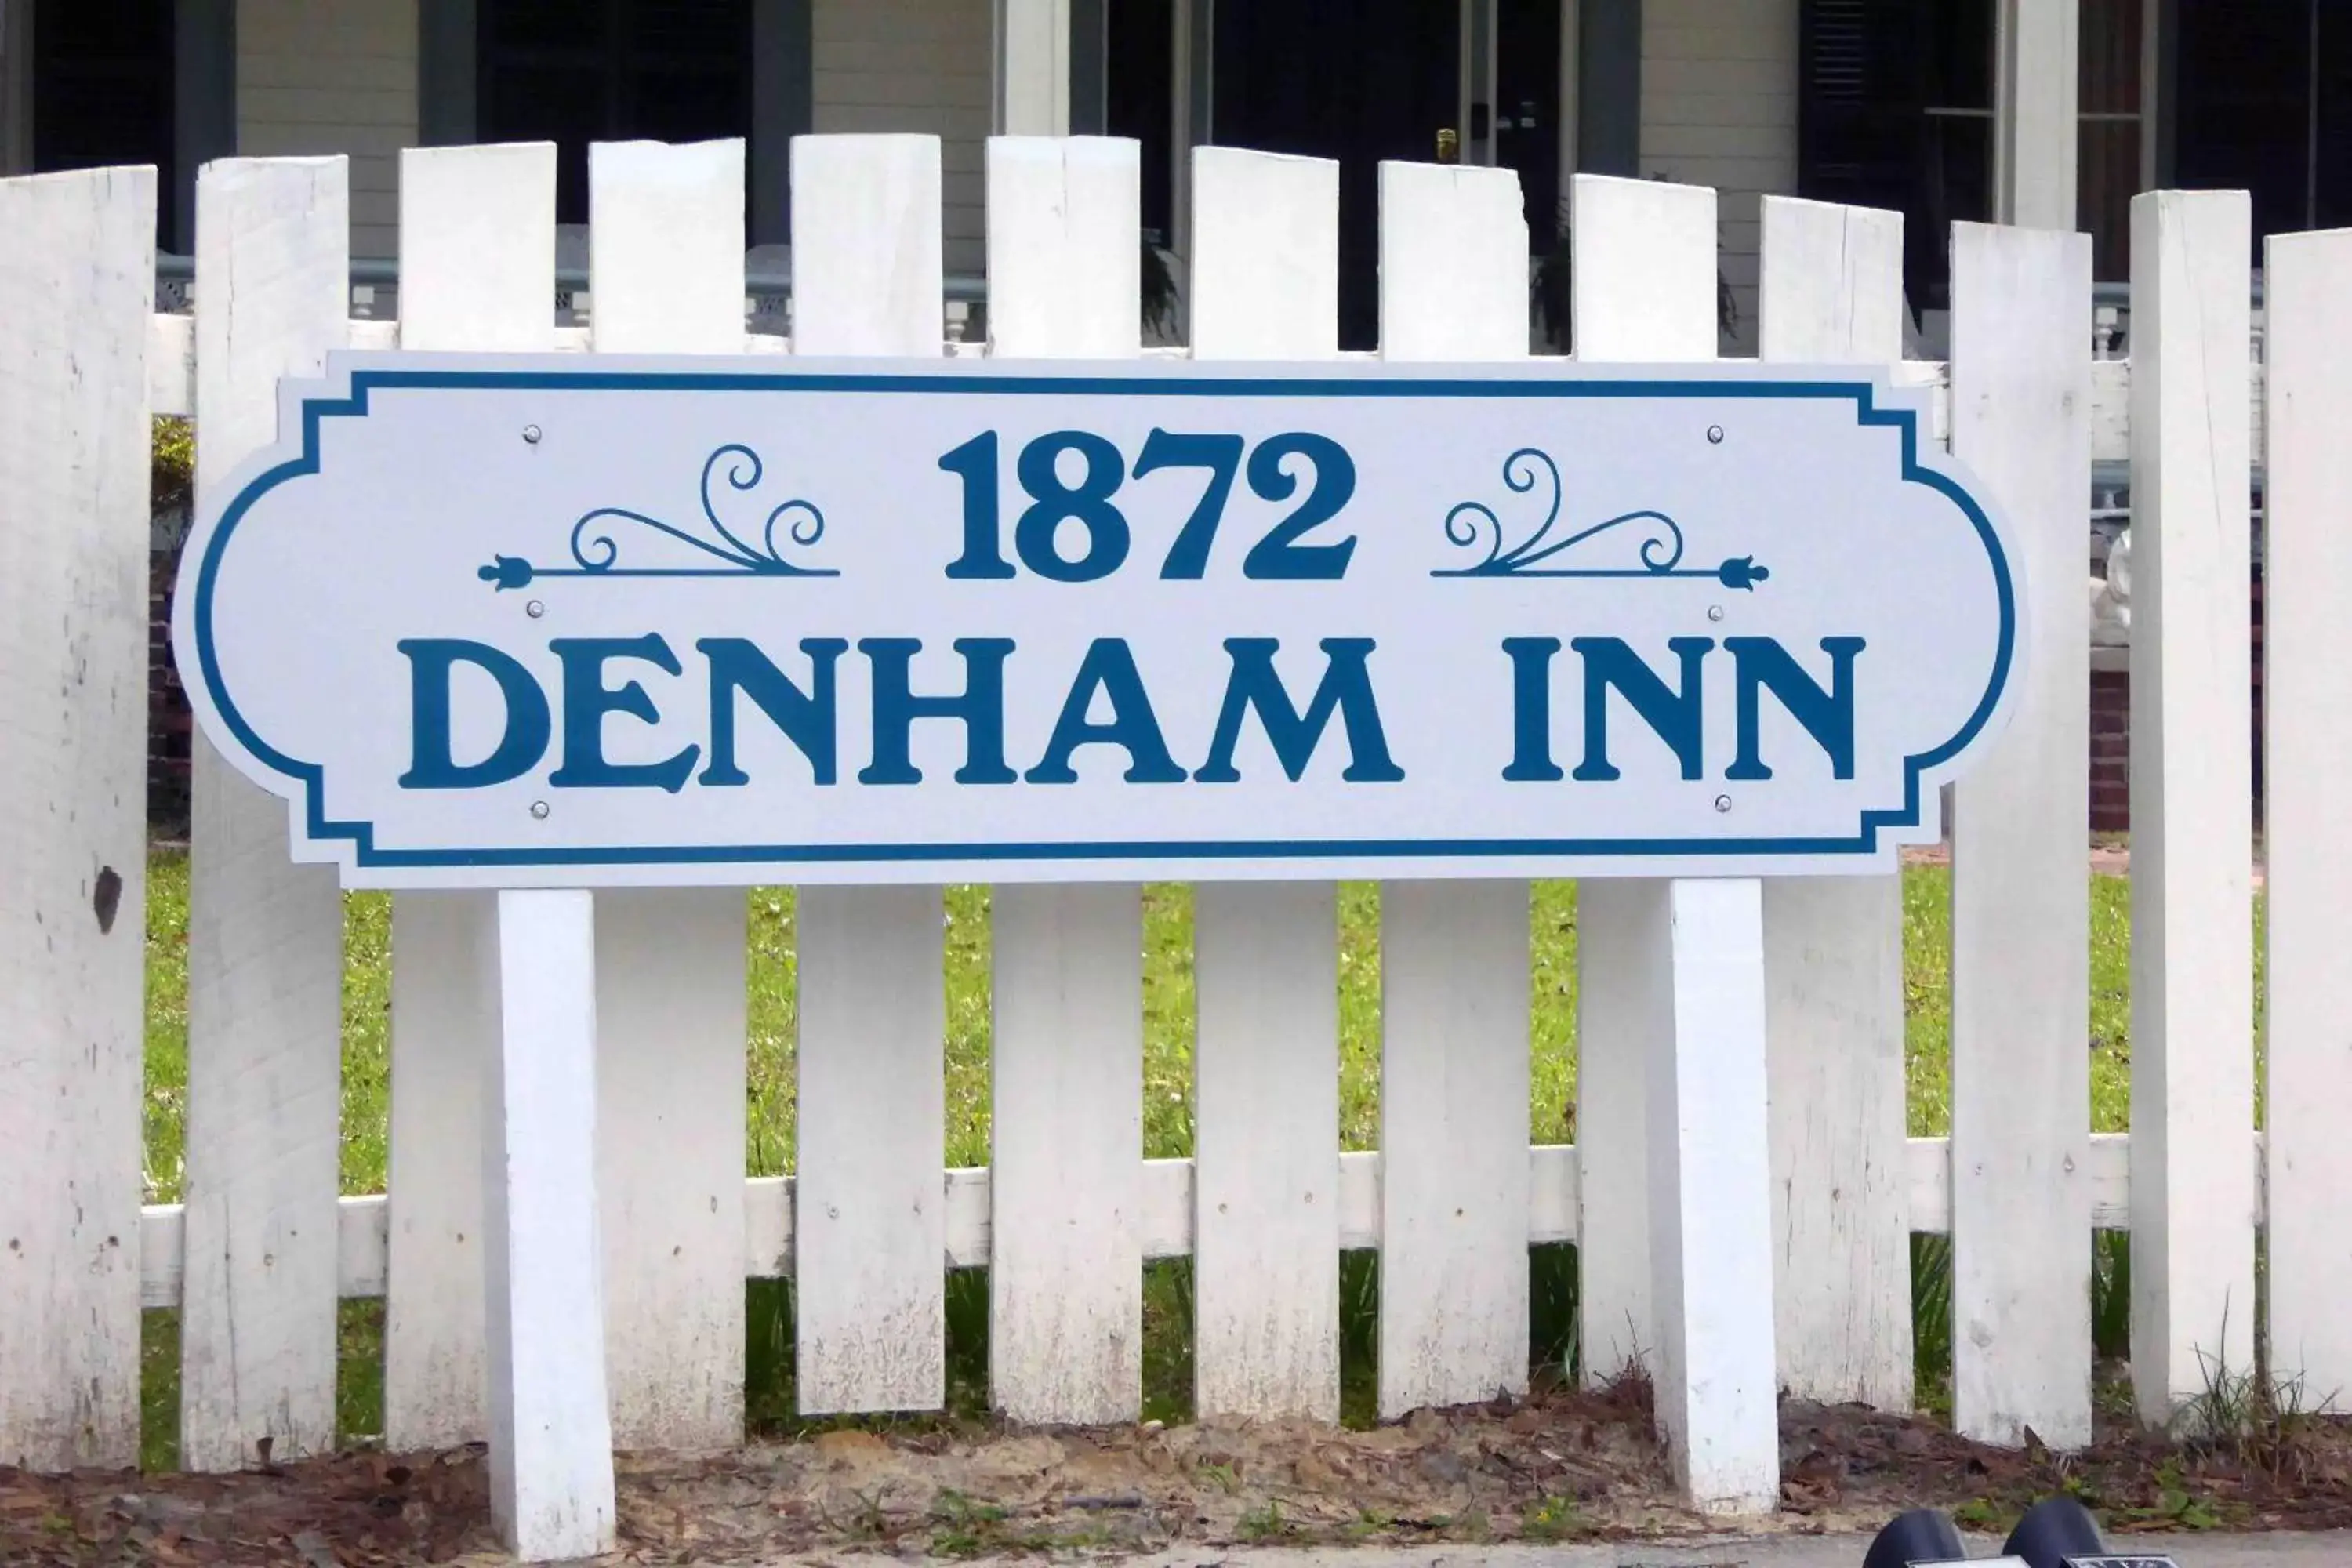 1872 Denham Inn